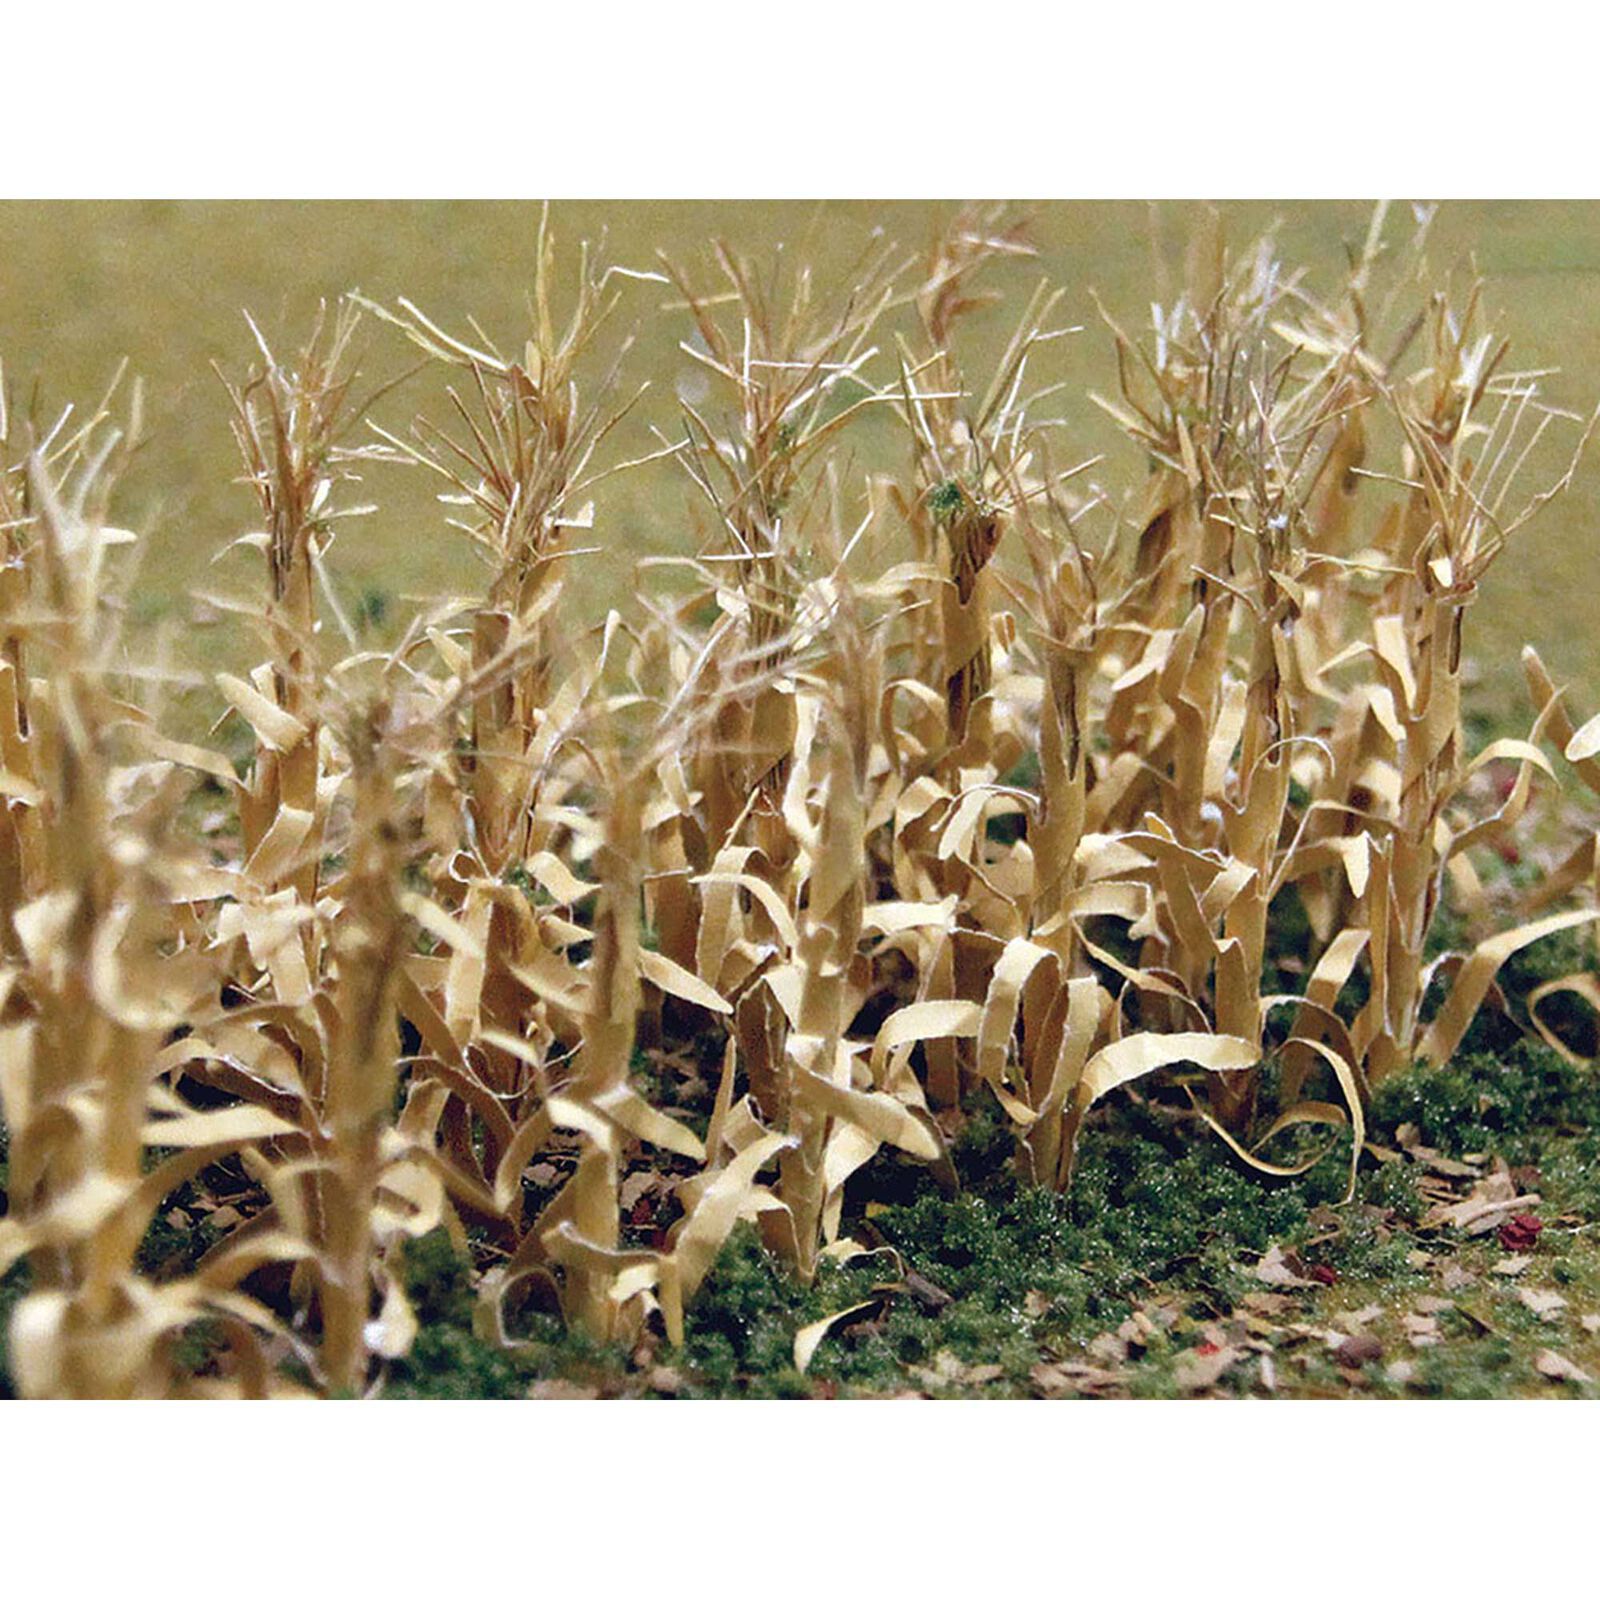 Dried Corn Stalks (30)